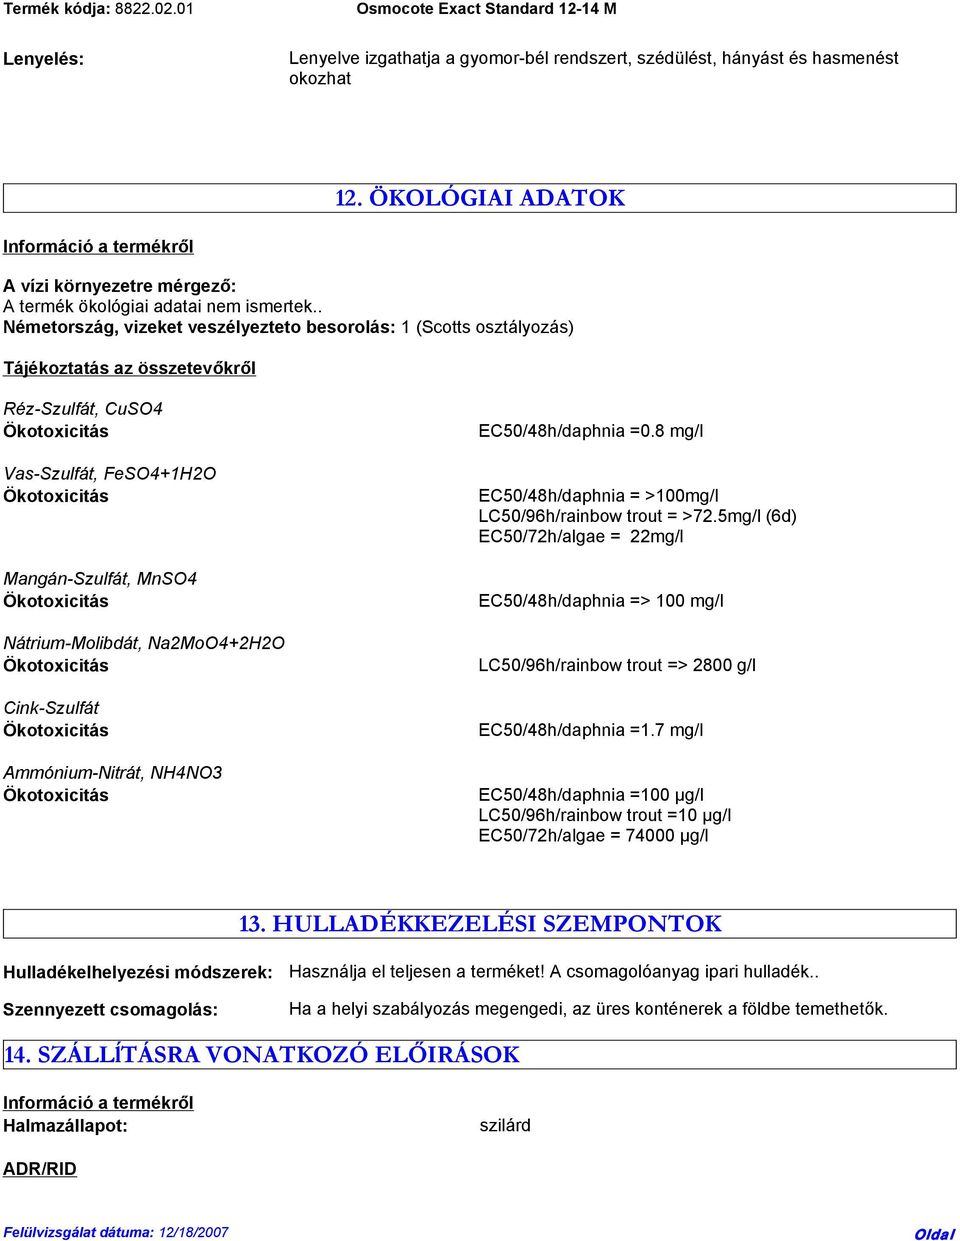 . Németország, vizeket veszélyezteto besorolás: 1 (Scotts osztályozás) Tájékoztatás az összetevőkről Réz-Szulfát, CuSO4 Vas-Szulfát, FeSO4+1H2O Mangán-Szulfát, MnSO4 Nátrium-Molibdát, Na2MoO4+2H2O